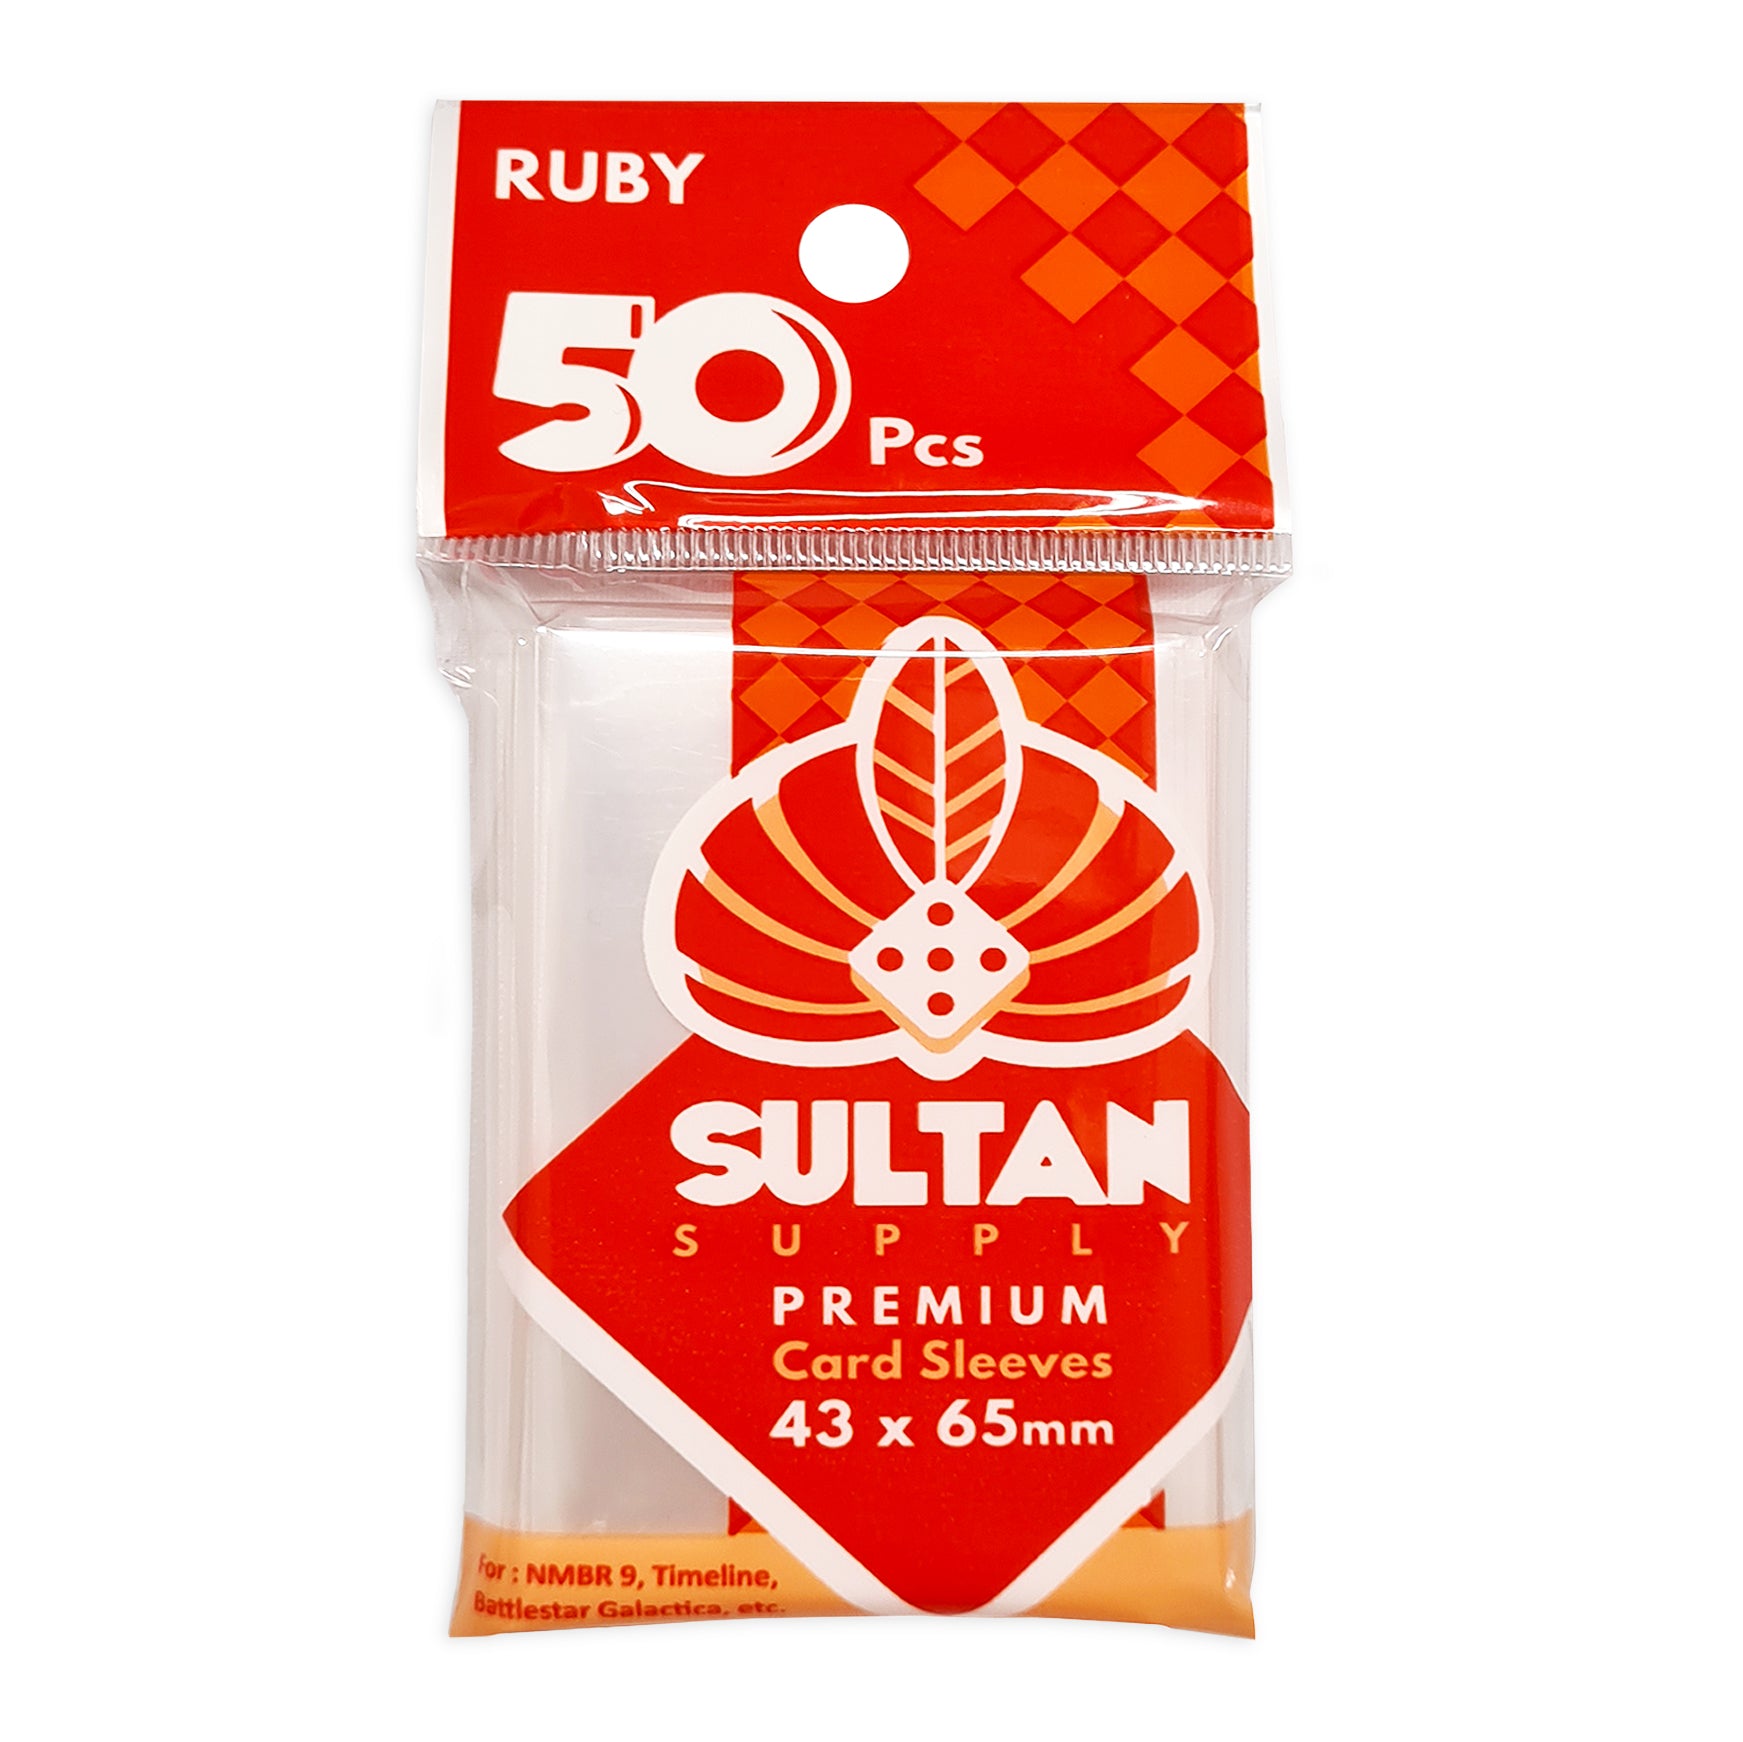 Sultan Card Sleeves: RUBY